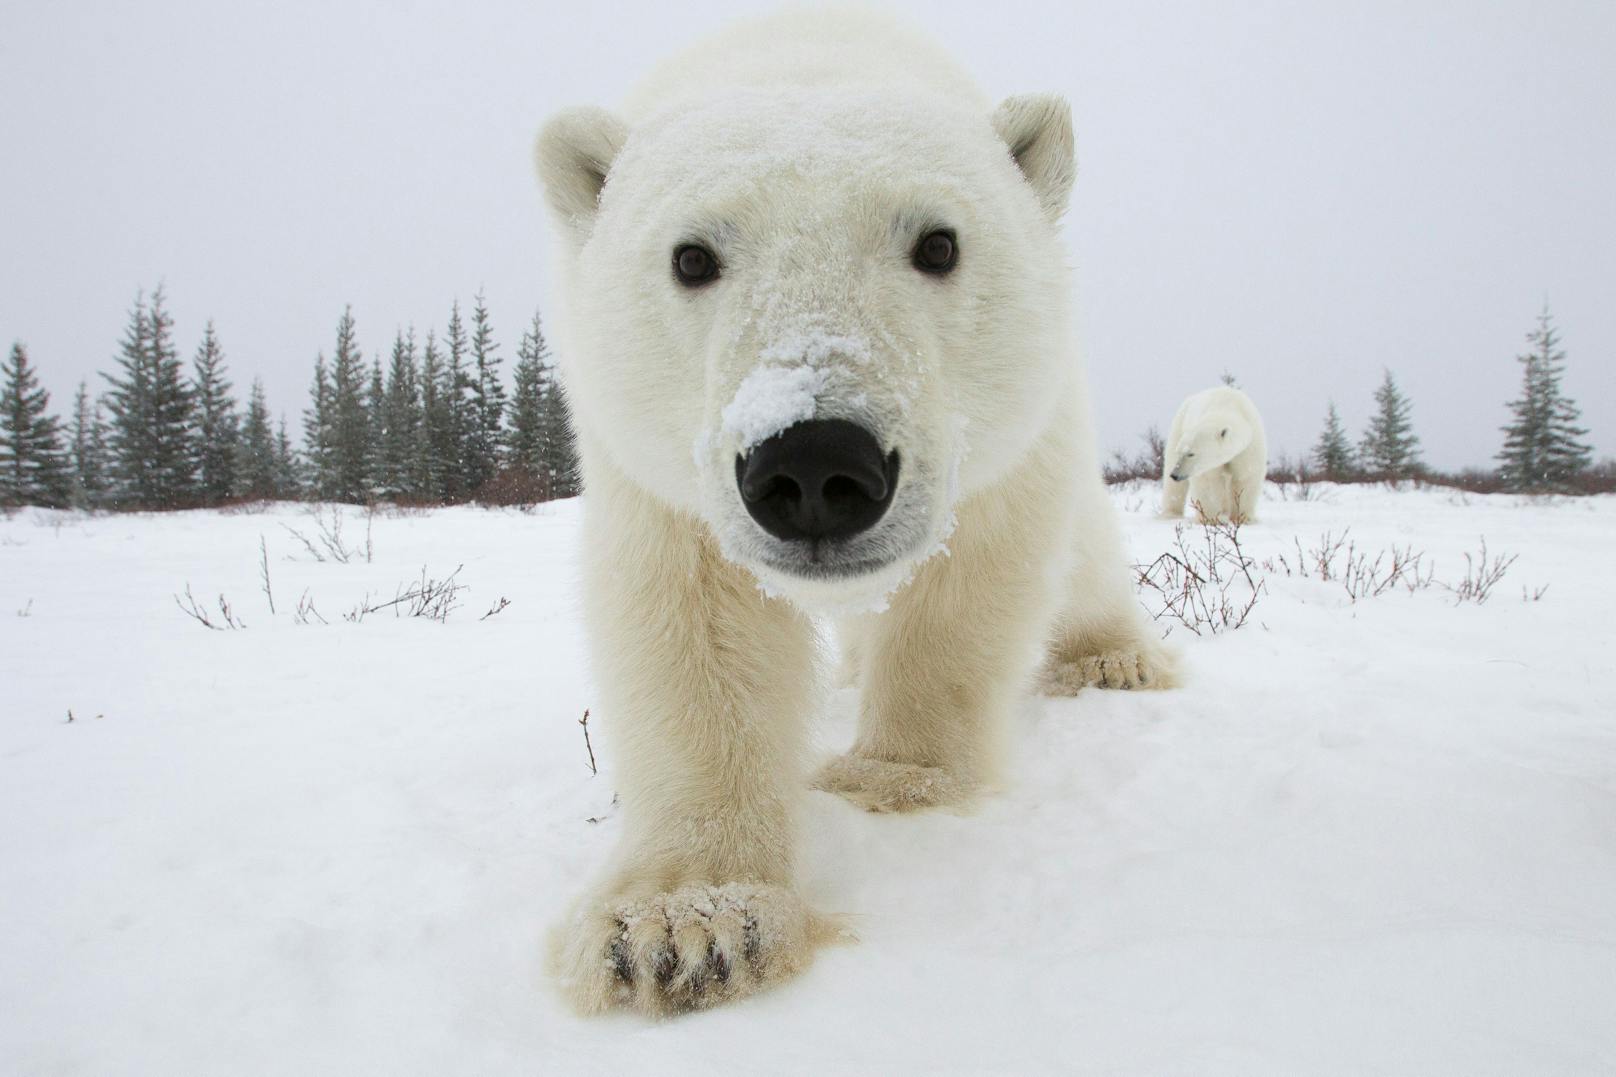 Dieser Polarbär hat wohl die versteckte Kamera entdeckt. 